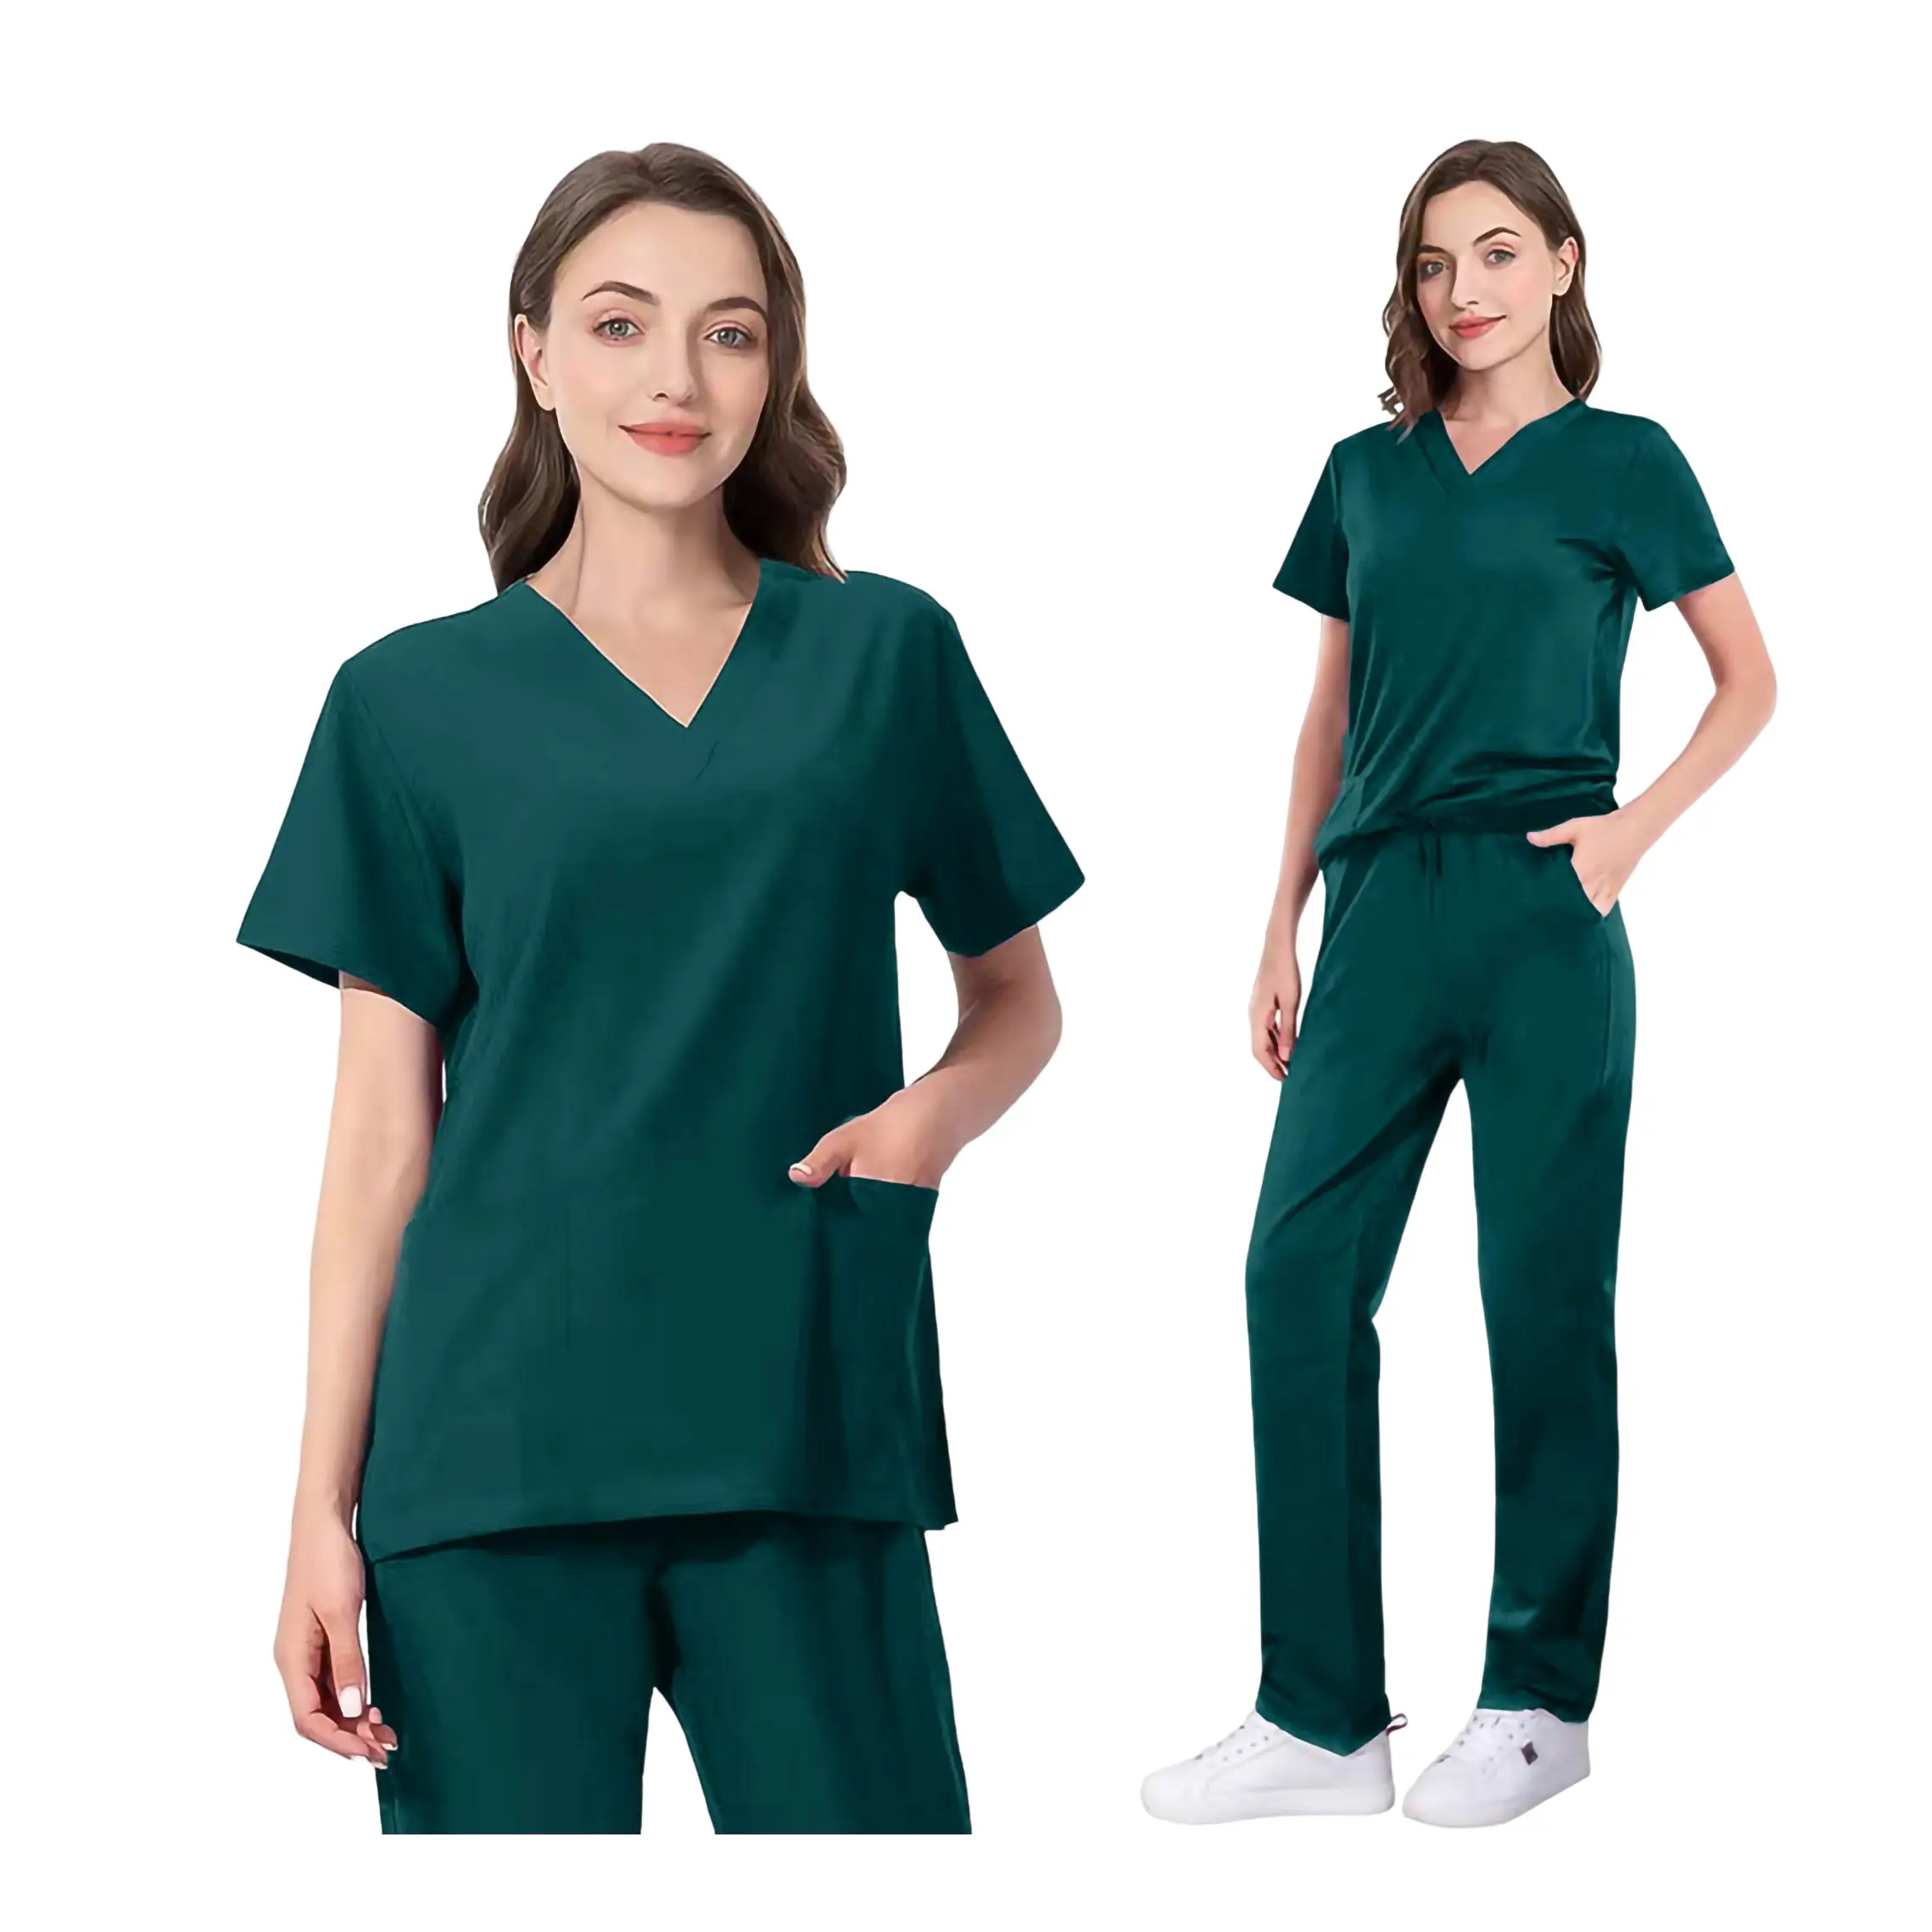 ชุดยูนิฟอร์มทางการแพทย์สำหรับผู้หญิง,ชุดพยาบาลสีเขียวสครับทางการแพทย์สำหรับเด็กผู้หญิงสูง